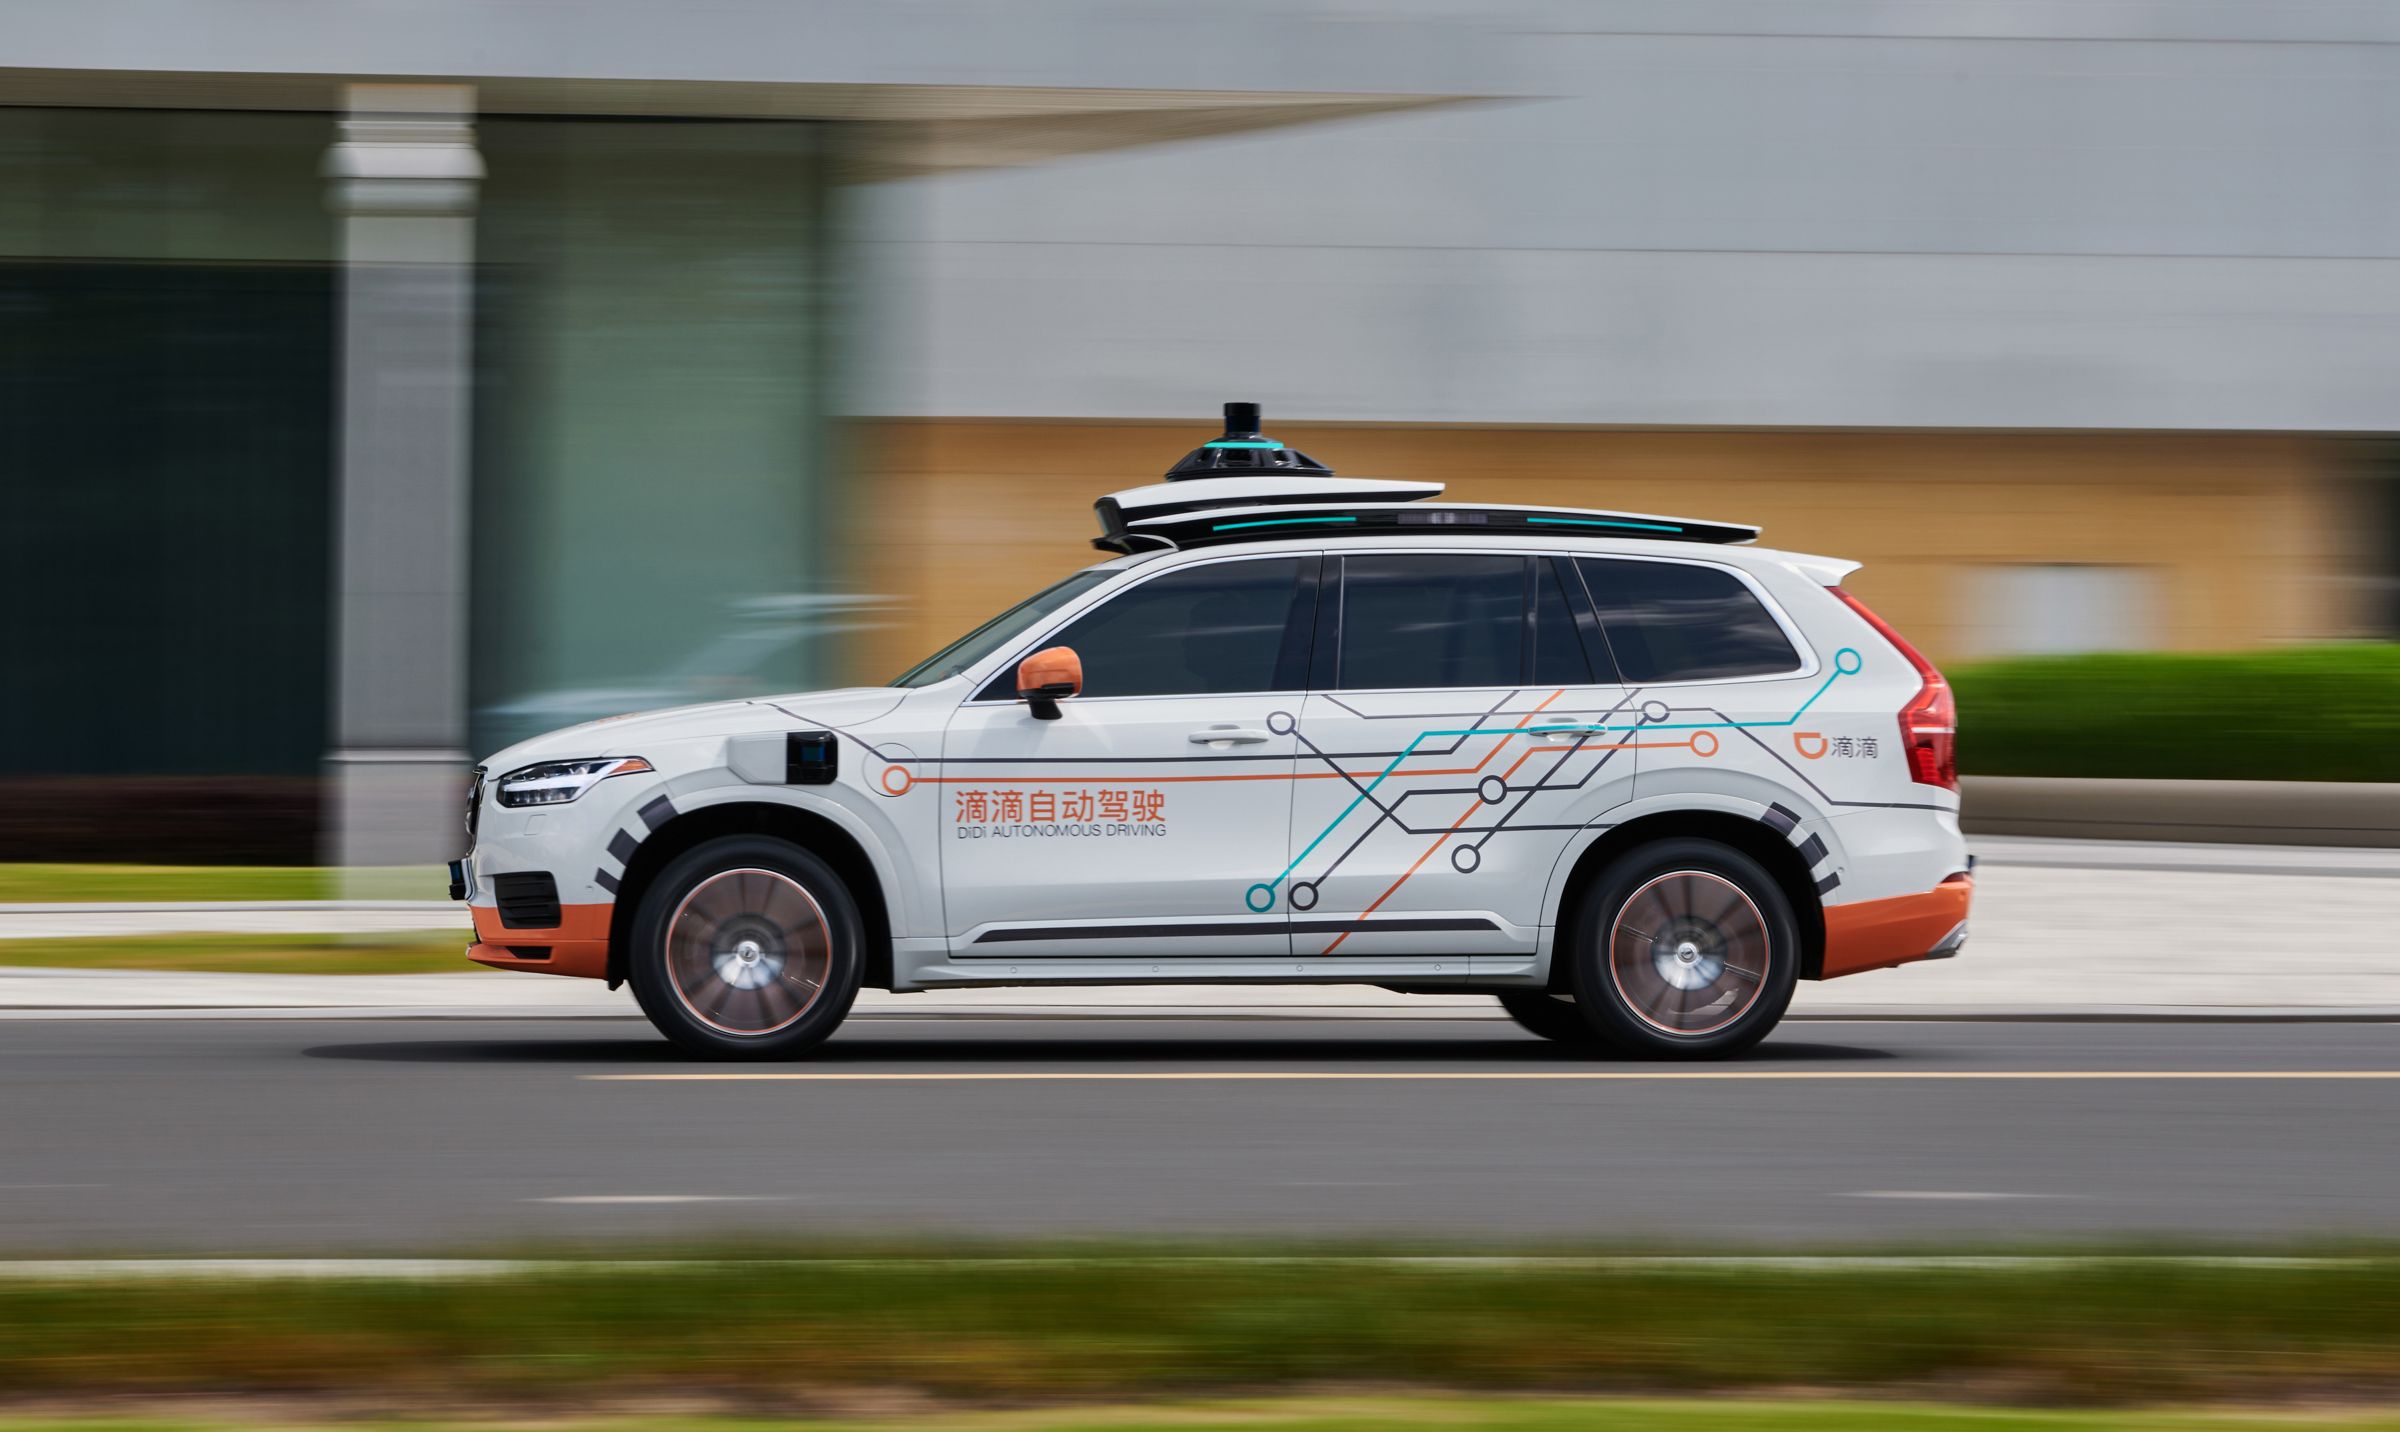 Volvo se une a DiDi, la plataforma de movilidad inteligente líder a nivel mundial, para su flota de prueba de vehículos autónomos